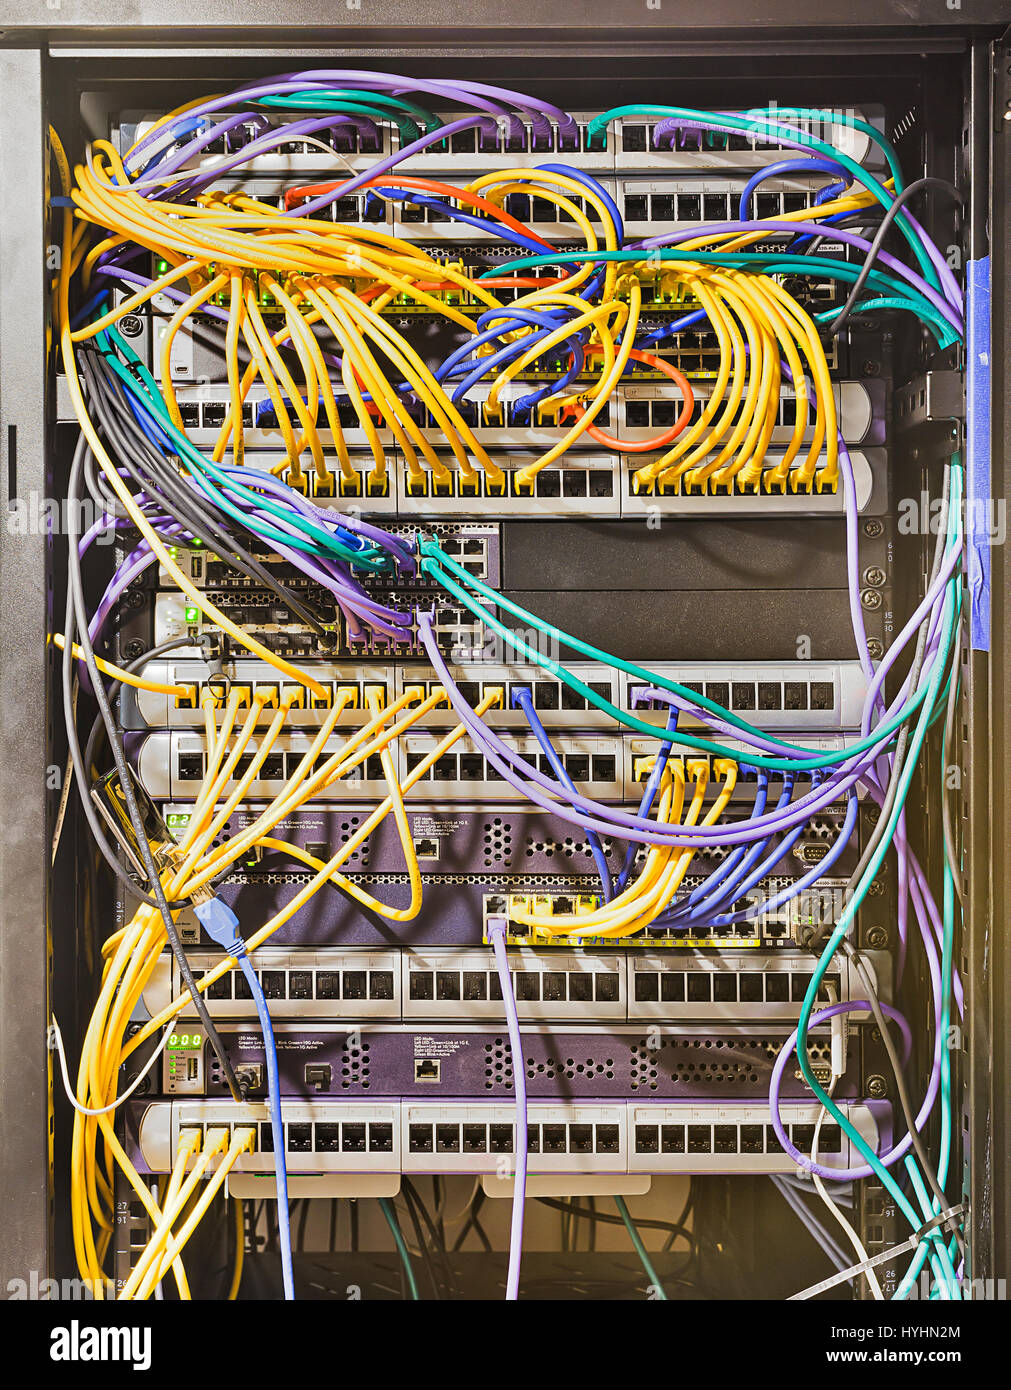 Armario rack abierto en el centro de datos moderno con paneles montados, switches, routers, servidores y otros equipos de telecomunicaciones conectados por cables de conexi n. Foto de stock